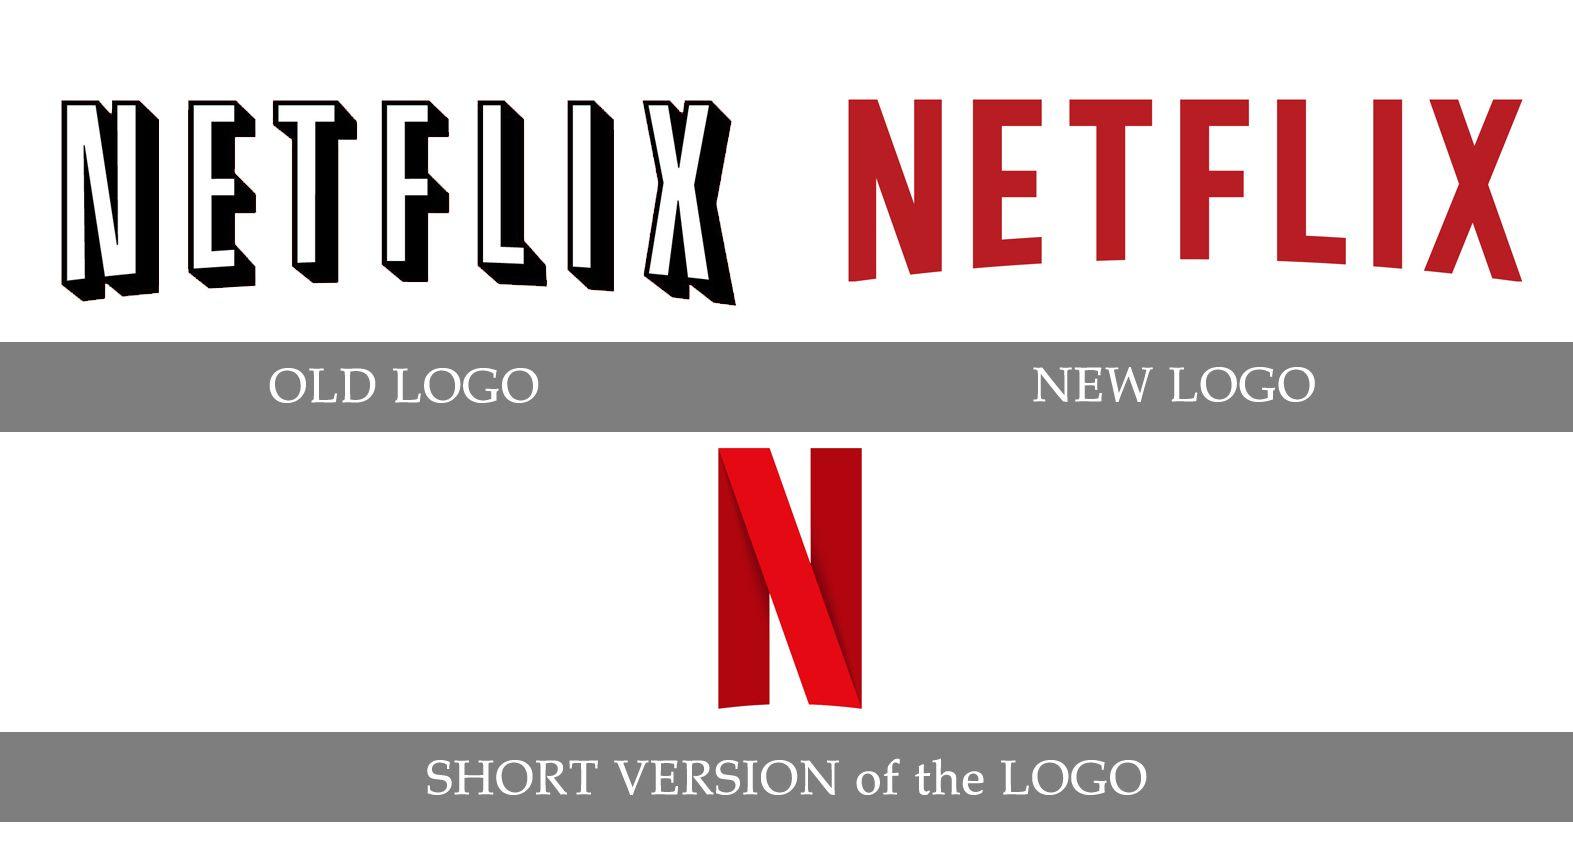 Netflix Old Logo - Netflix Logo, Netflix Symbol, Meaning, History and Evolution